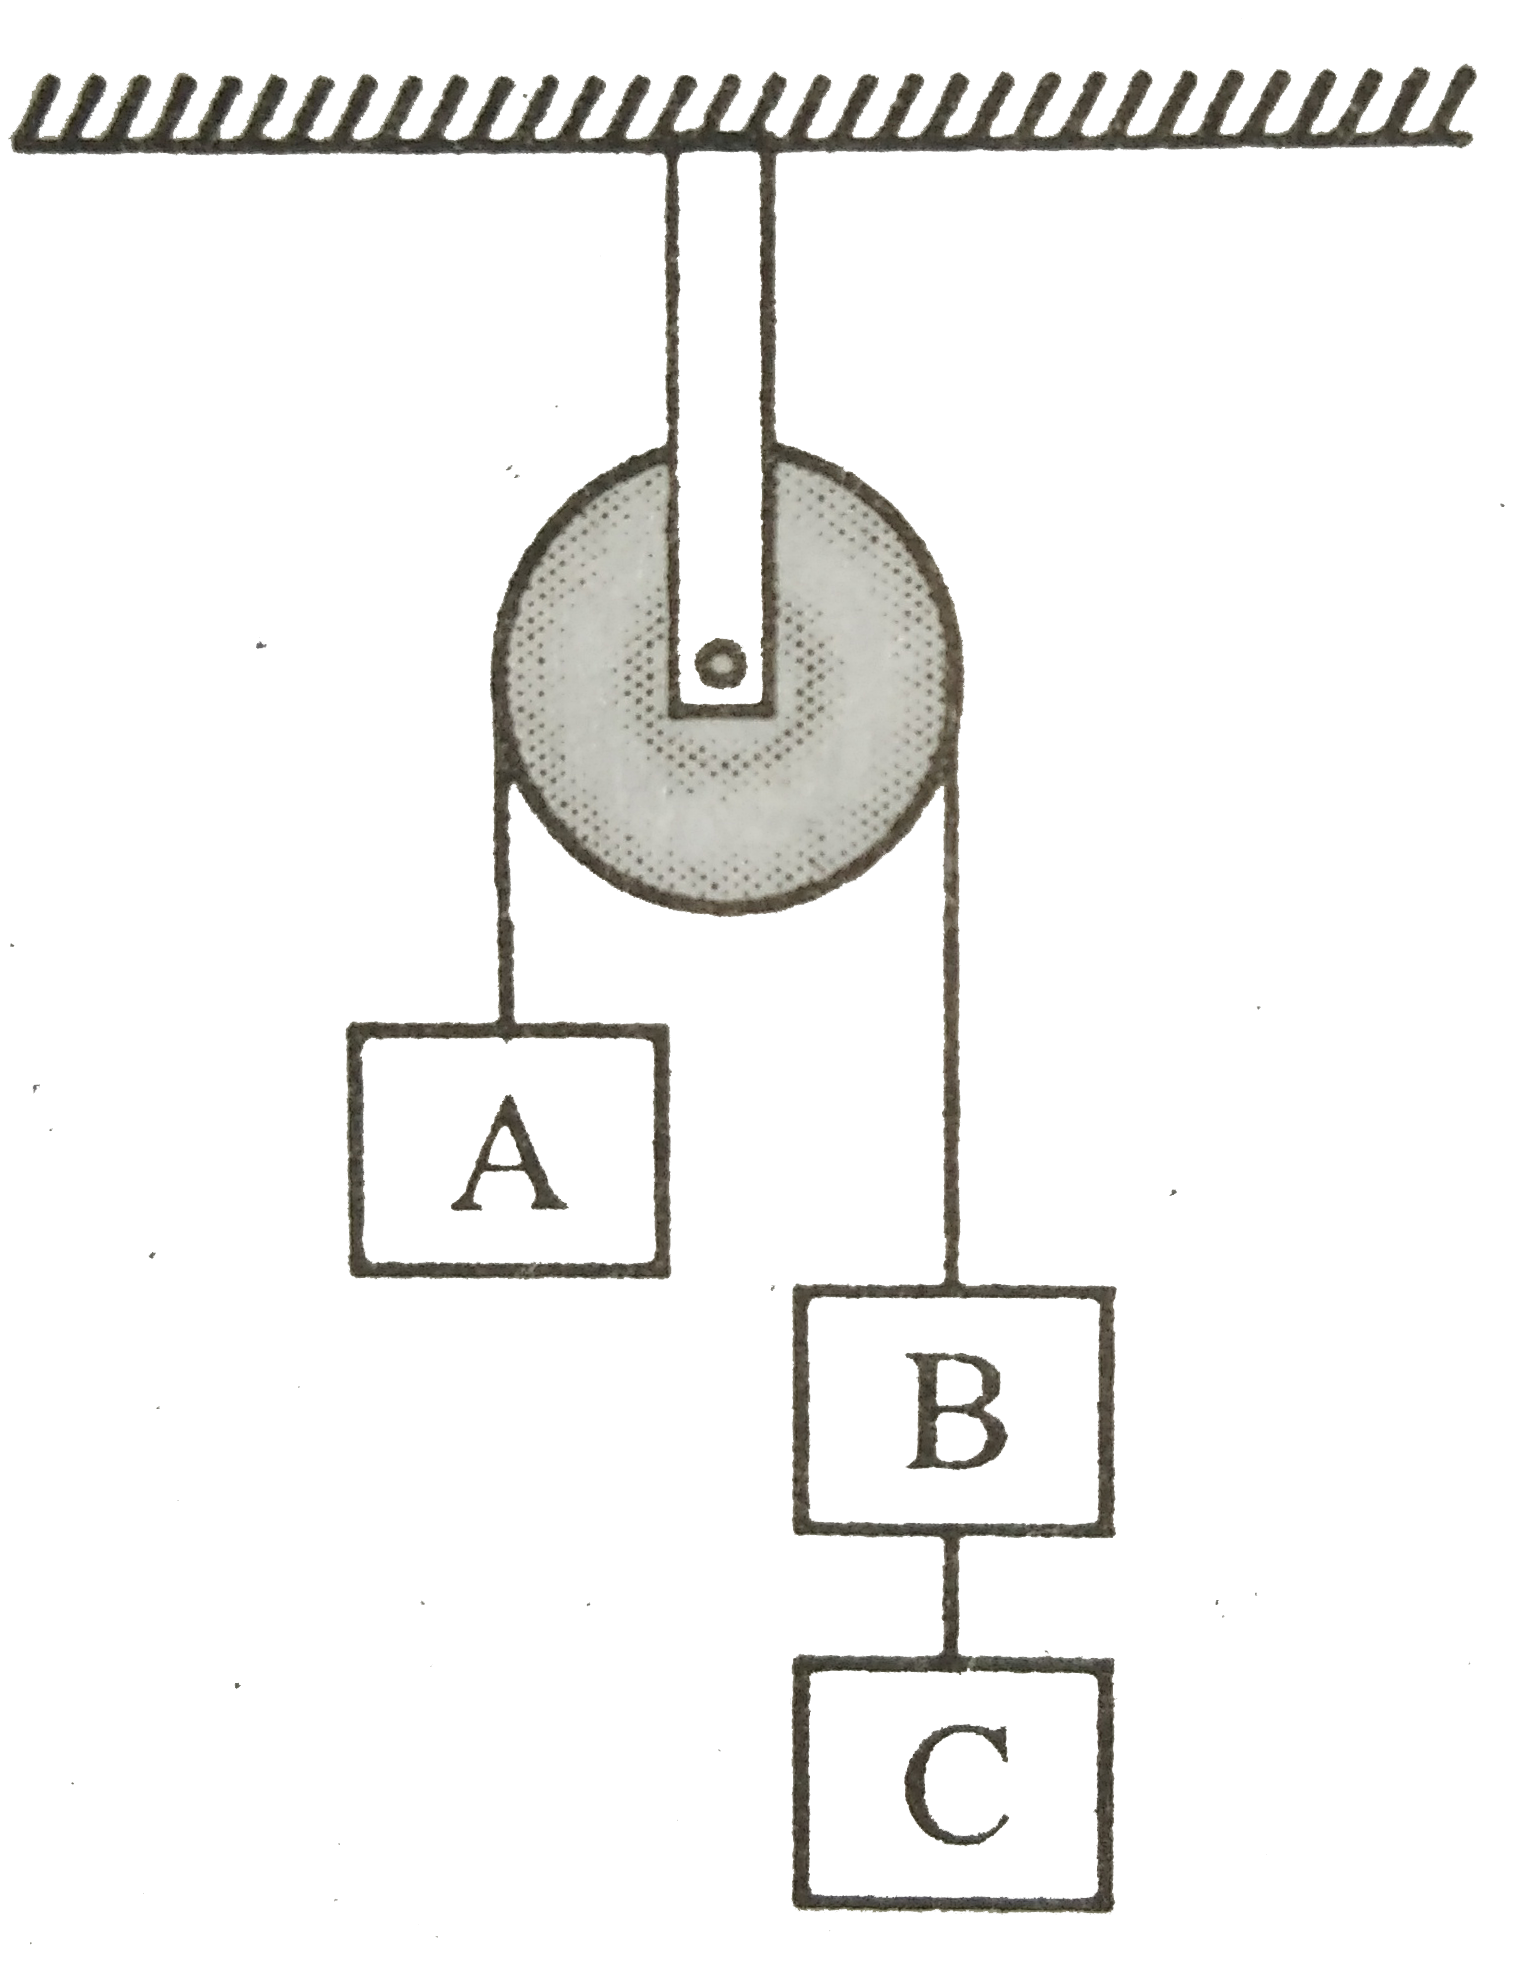 2 किग्रा भार के तीन पिंड A, B व C एक स्थिर घिरनी से होकर जाने वाली डोरी से बँधे हैं । पिंड B और C को जोड़ने वाली डोरी में तनाव होगा -